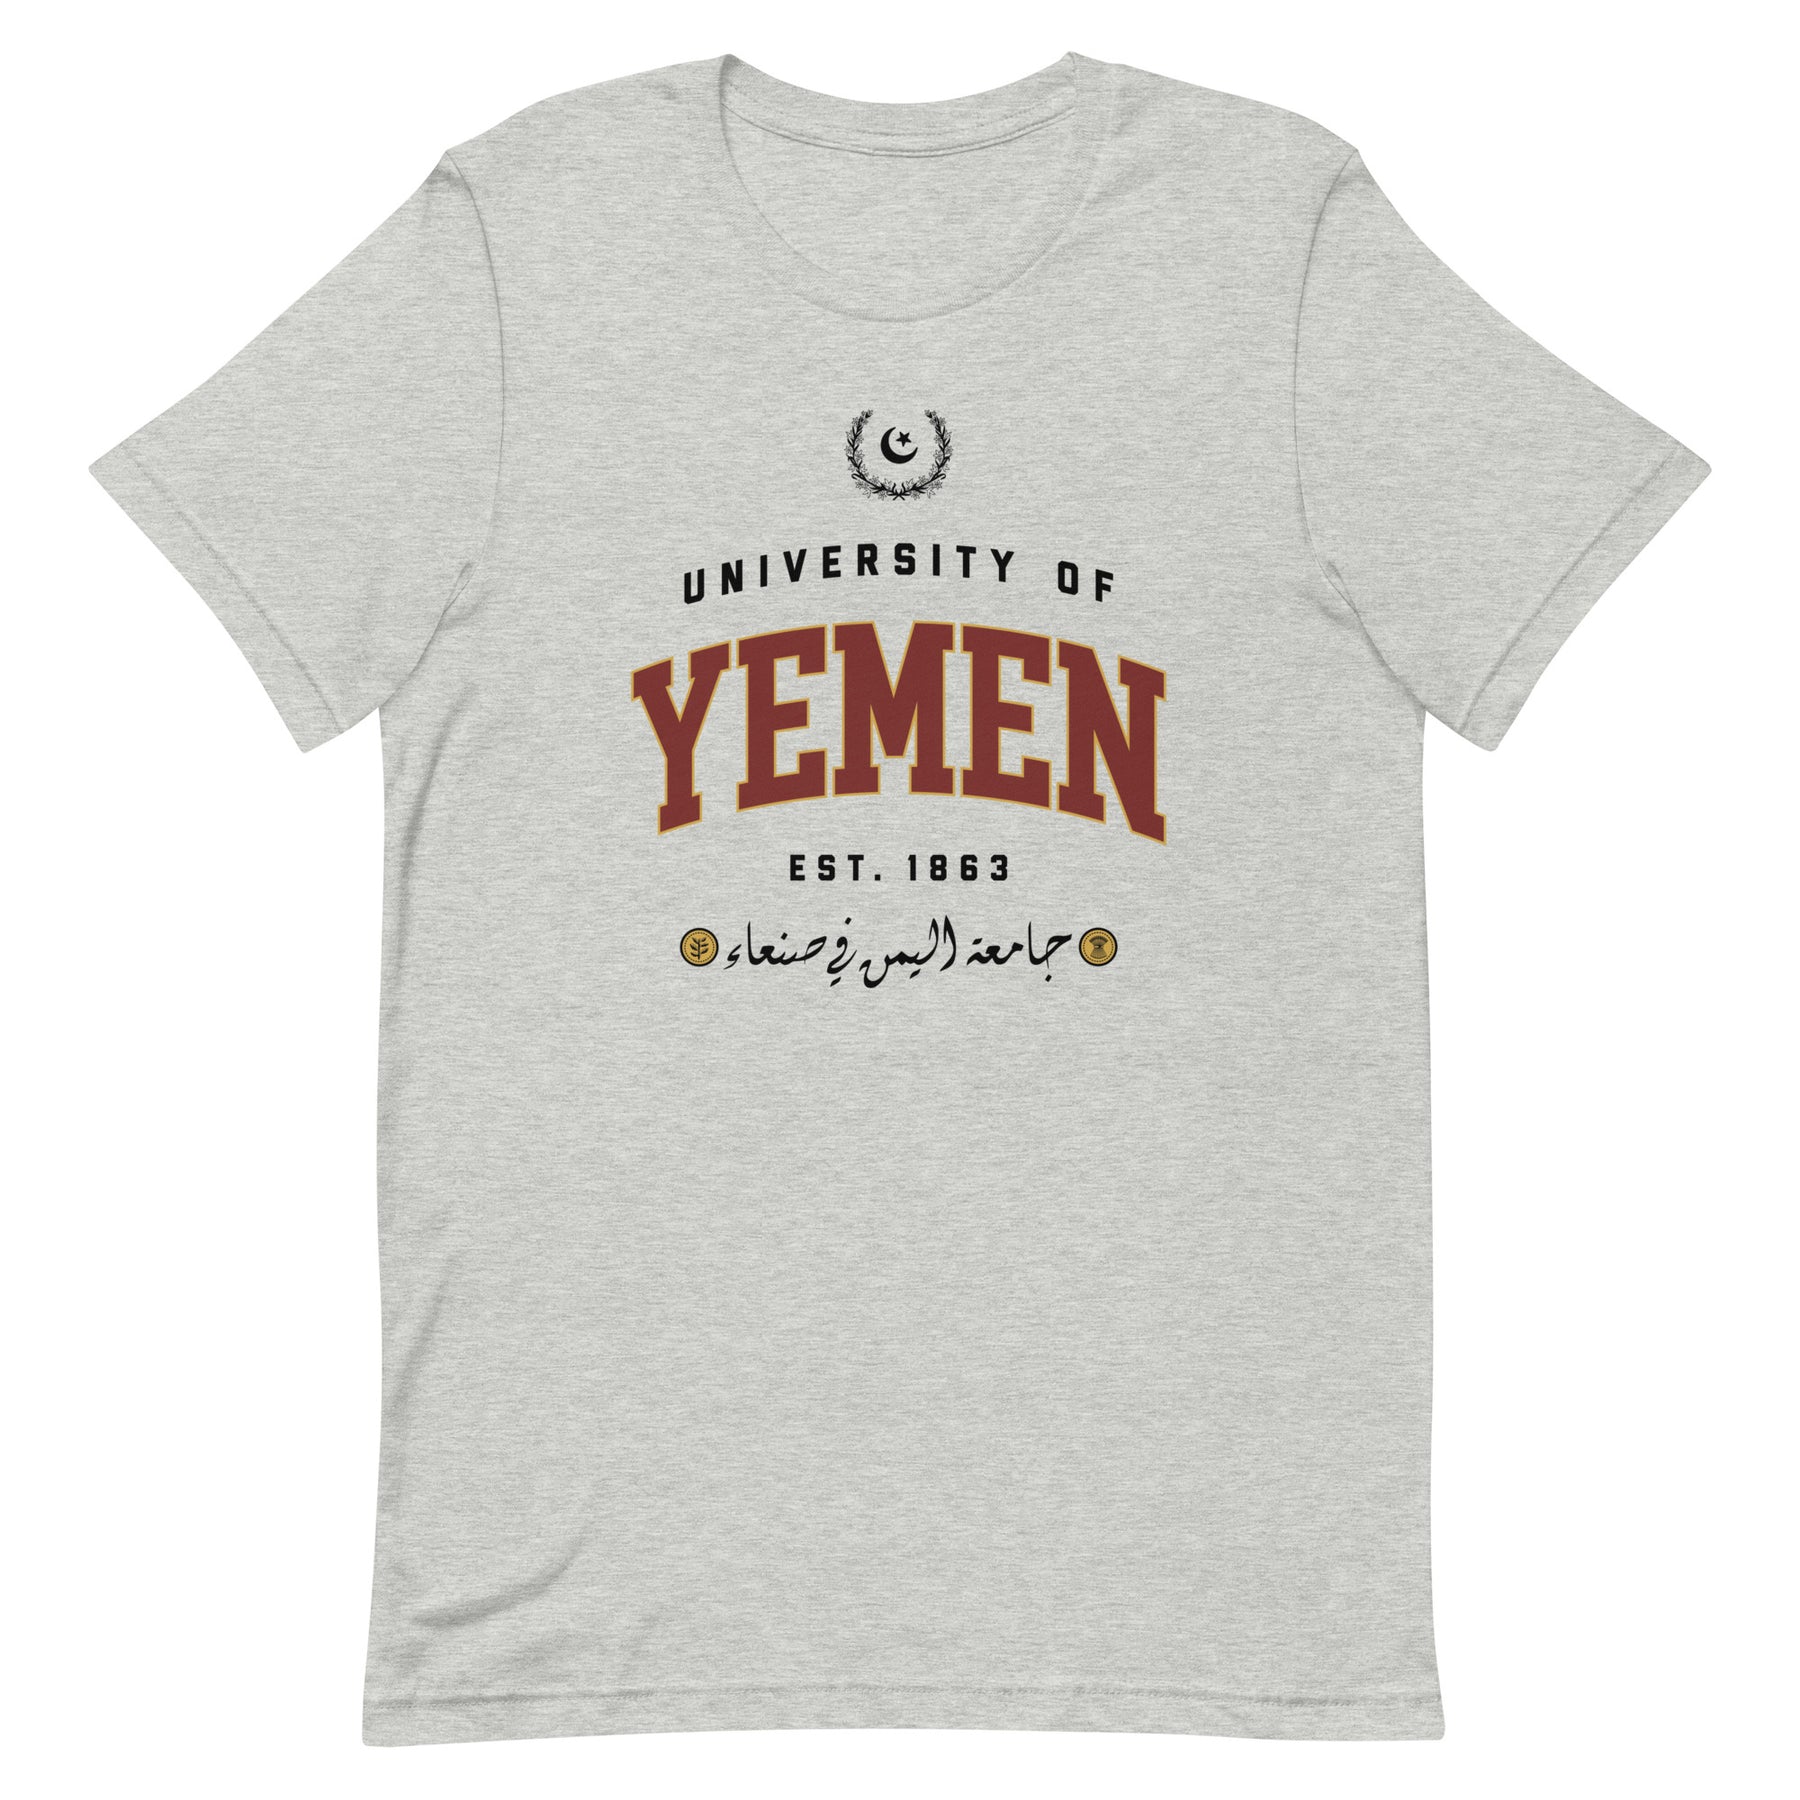 University of Yemen - T shirt